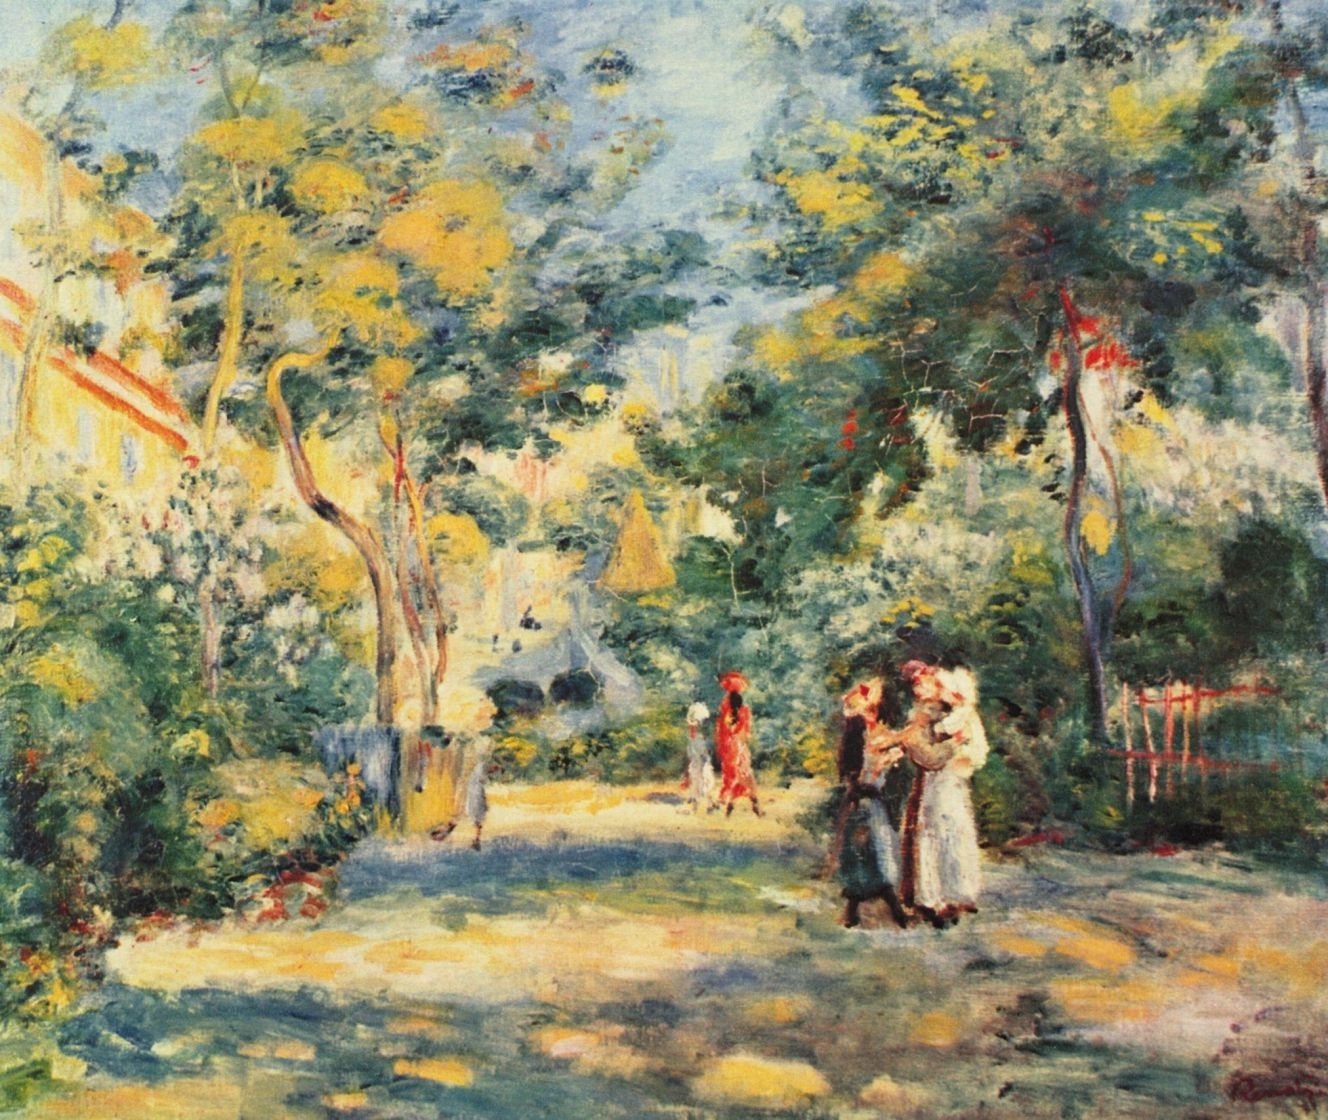 Ренуар. Фигуры в саду. Около 1880-1890